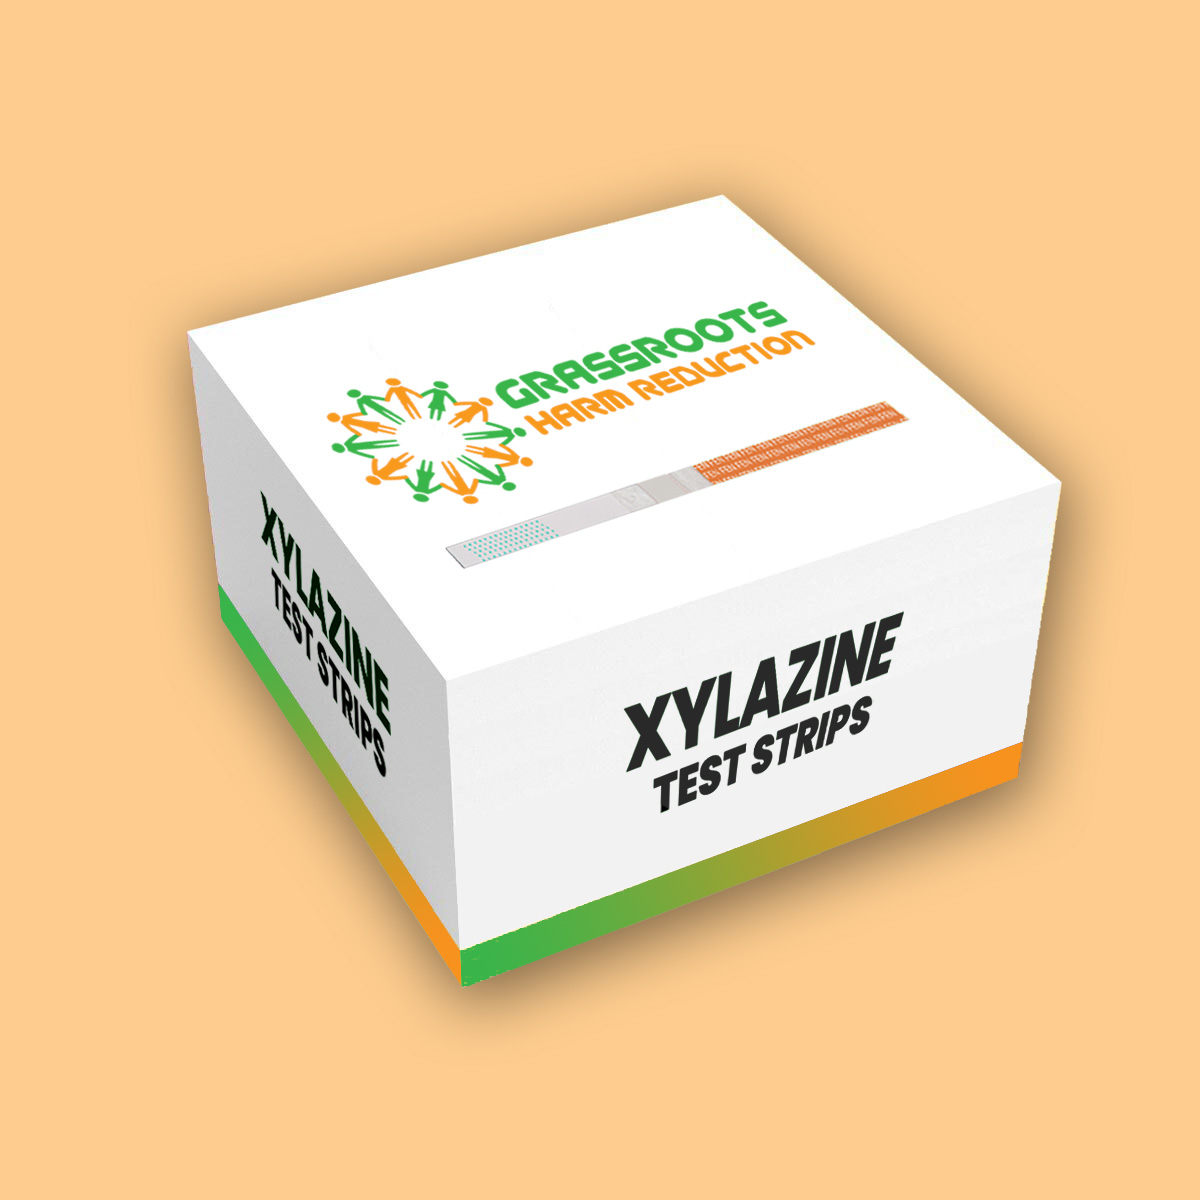 xylazine-test-strips-box